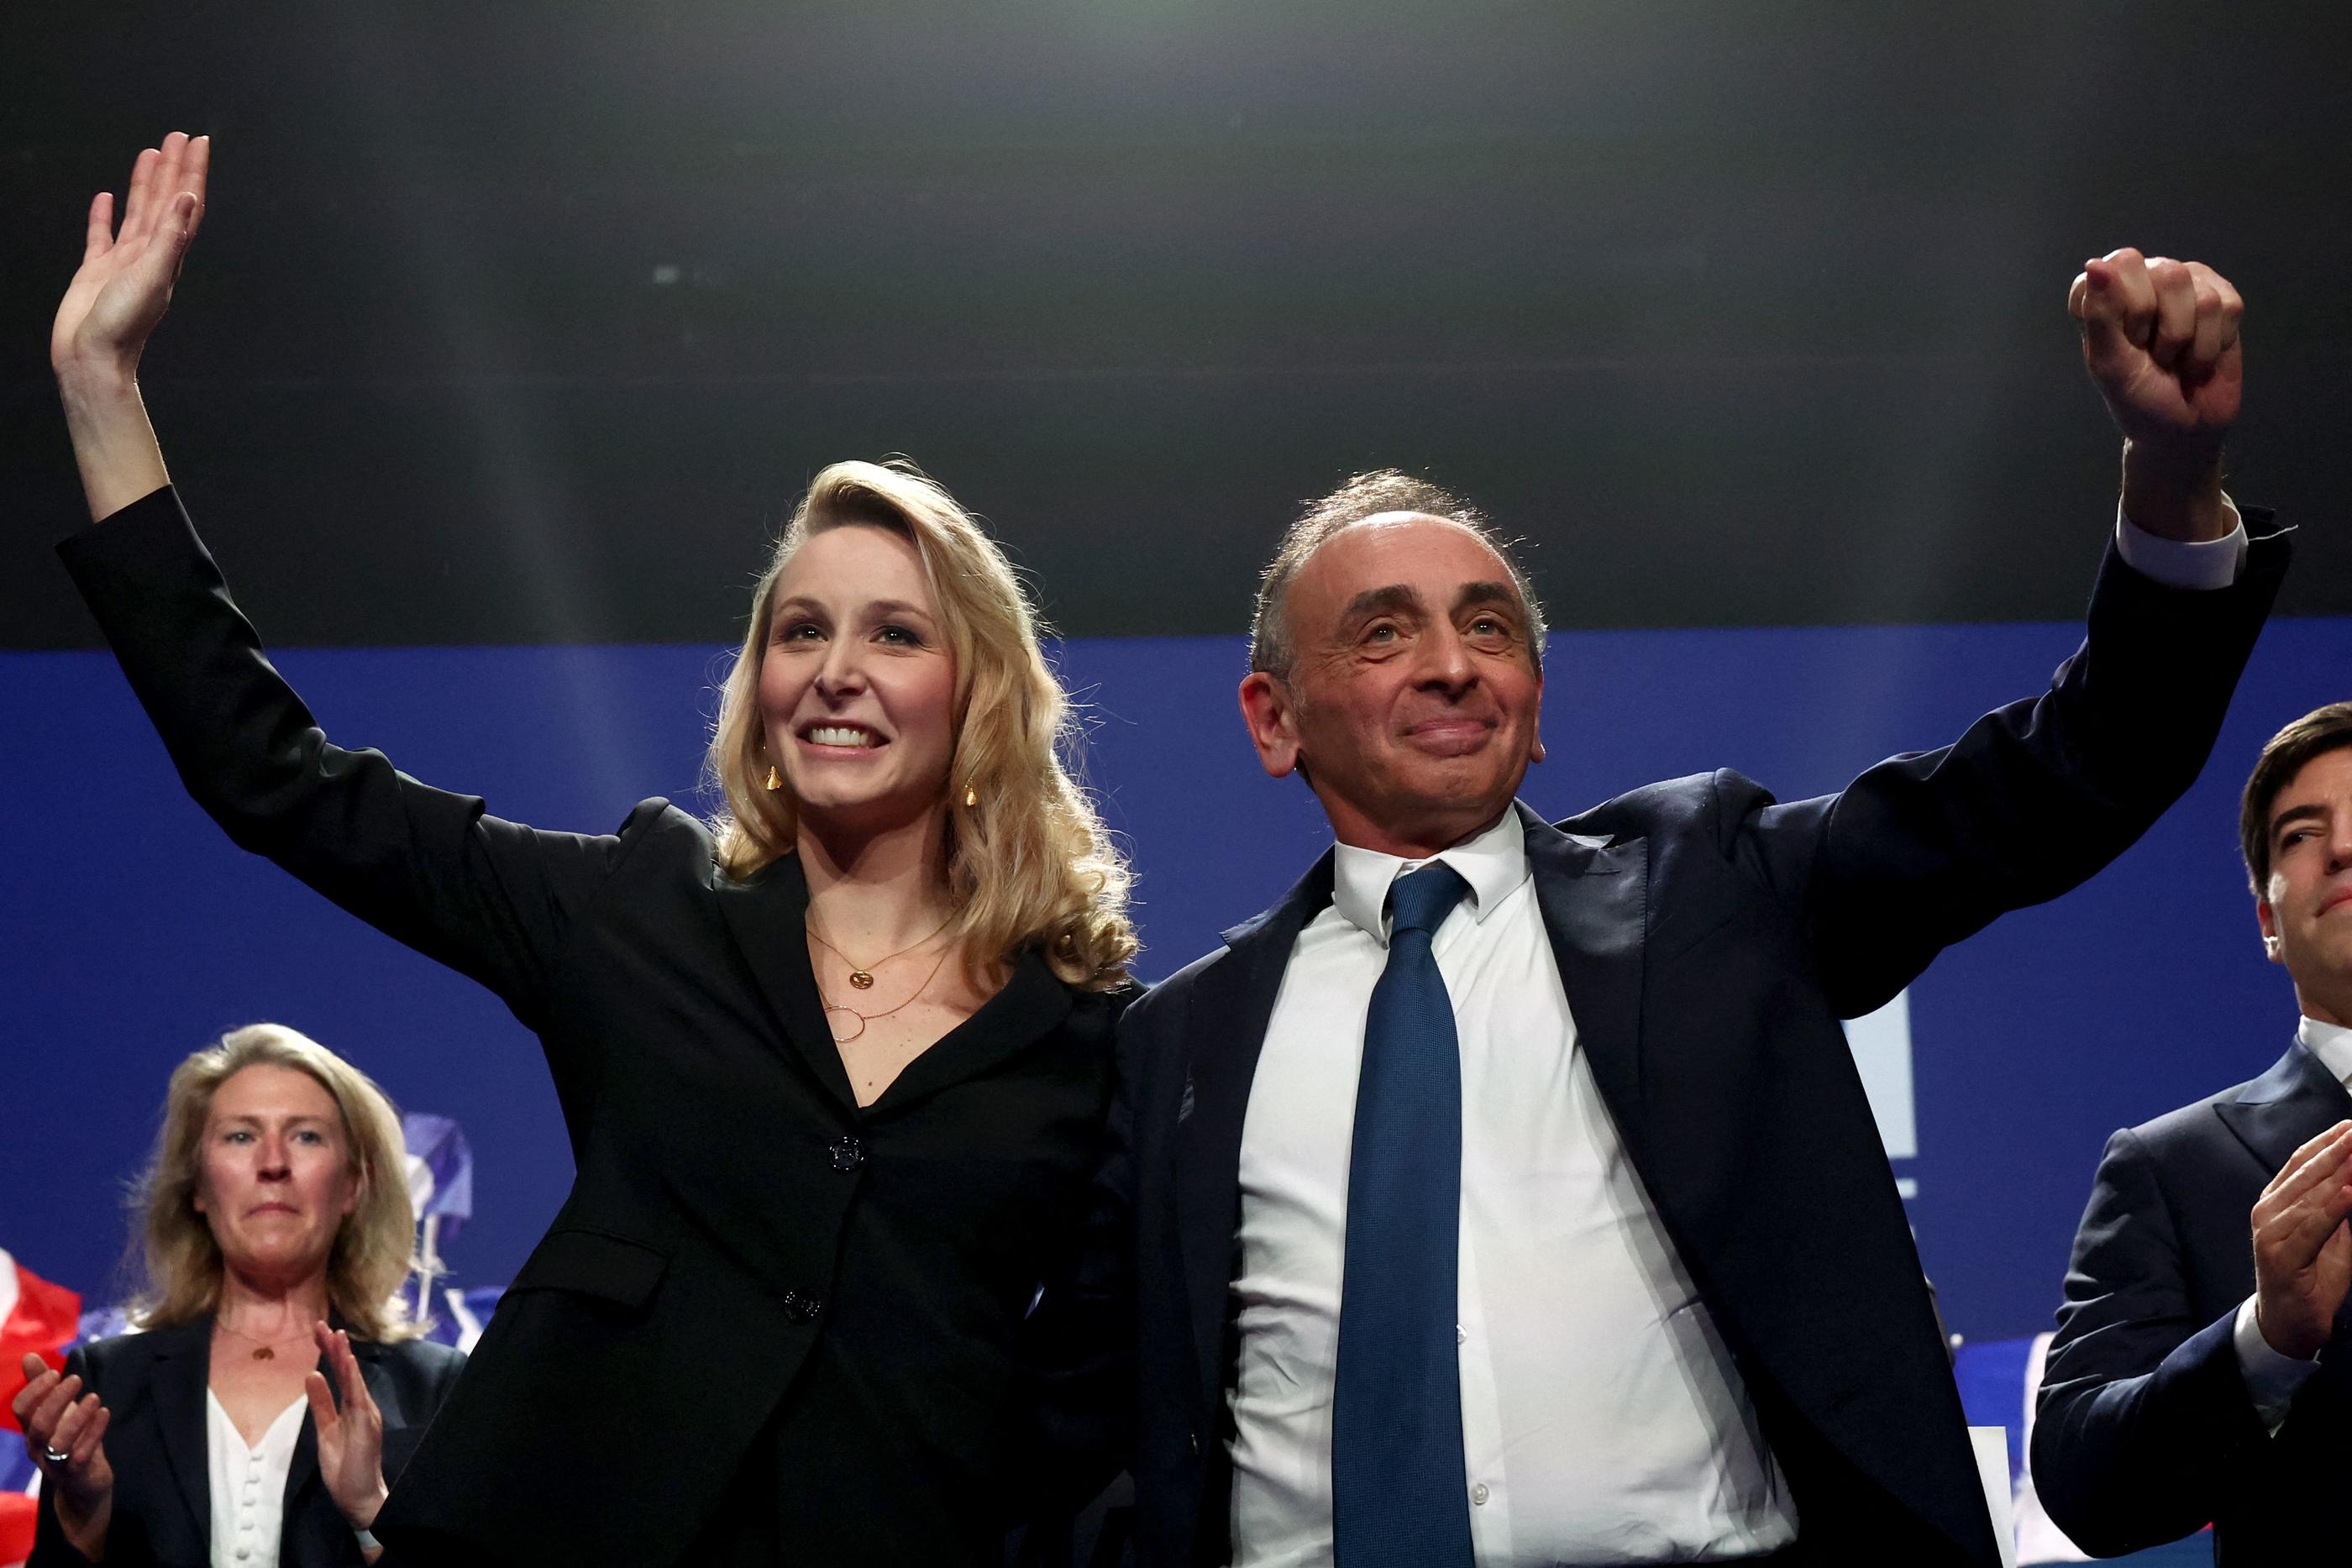 La tête de liste aux élections européennes Marion Maréchal et l'ancien éditorialiste Éric Zemmour étaient en opération reconquête ce dimanche au Dôme de Paris (XVe), alors qu'ils ne sont crédités que de 4,5% des intentions de vote.  AFP/Emmanuel Dunand